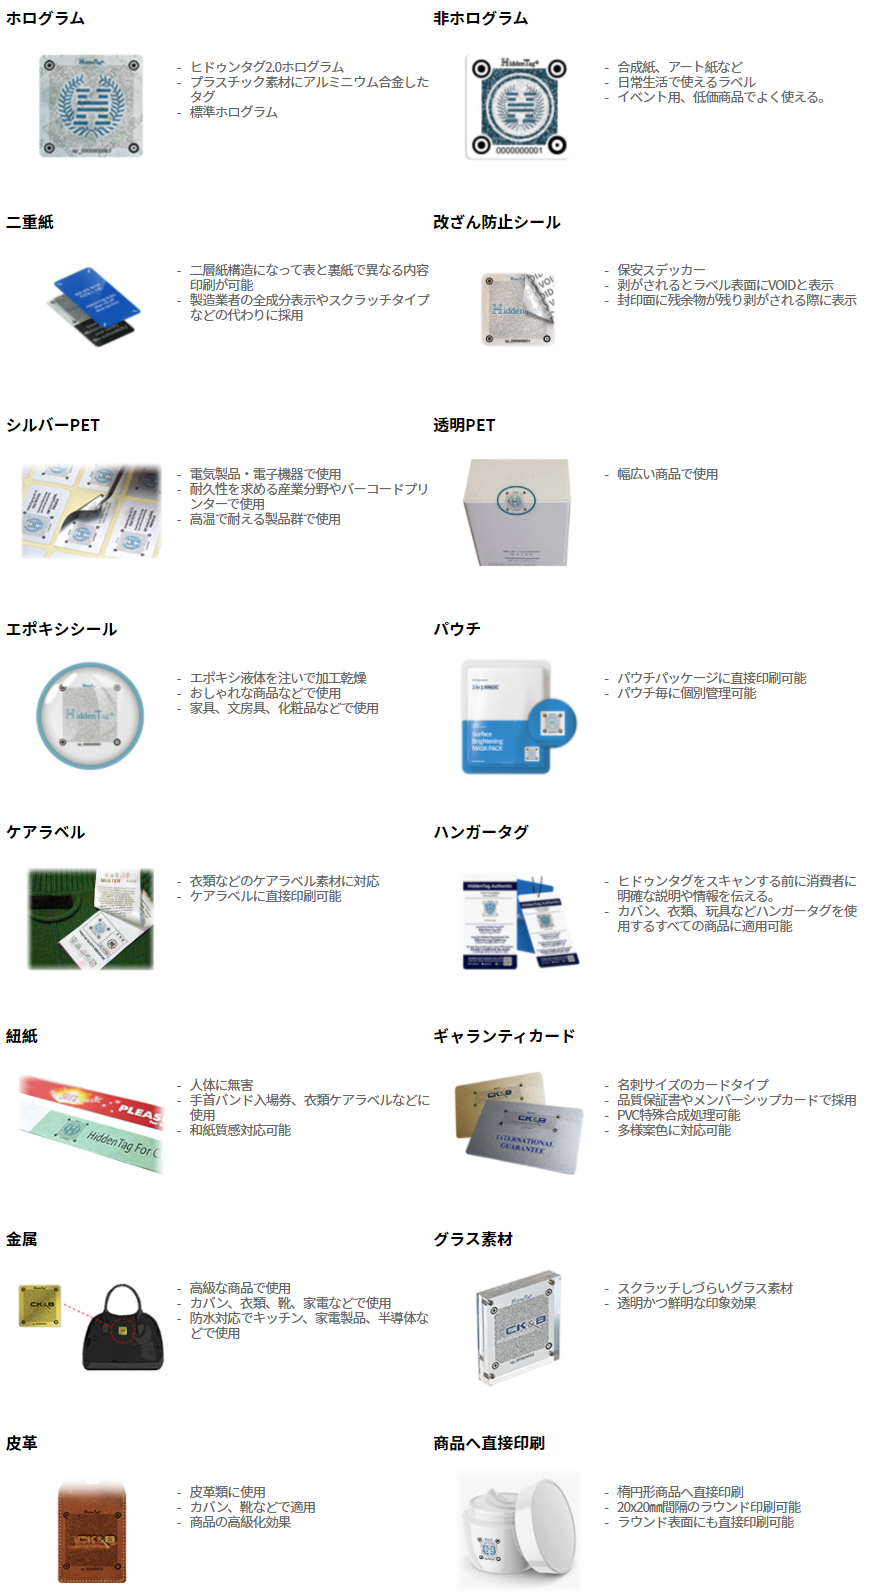 ホログラムシールや、二重紙、VVOID
など様々な媒体に印刷が可能です。